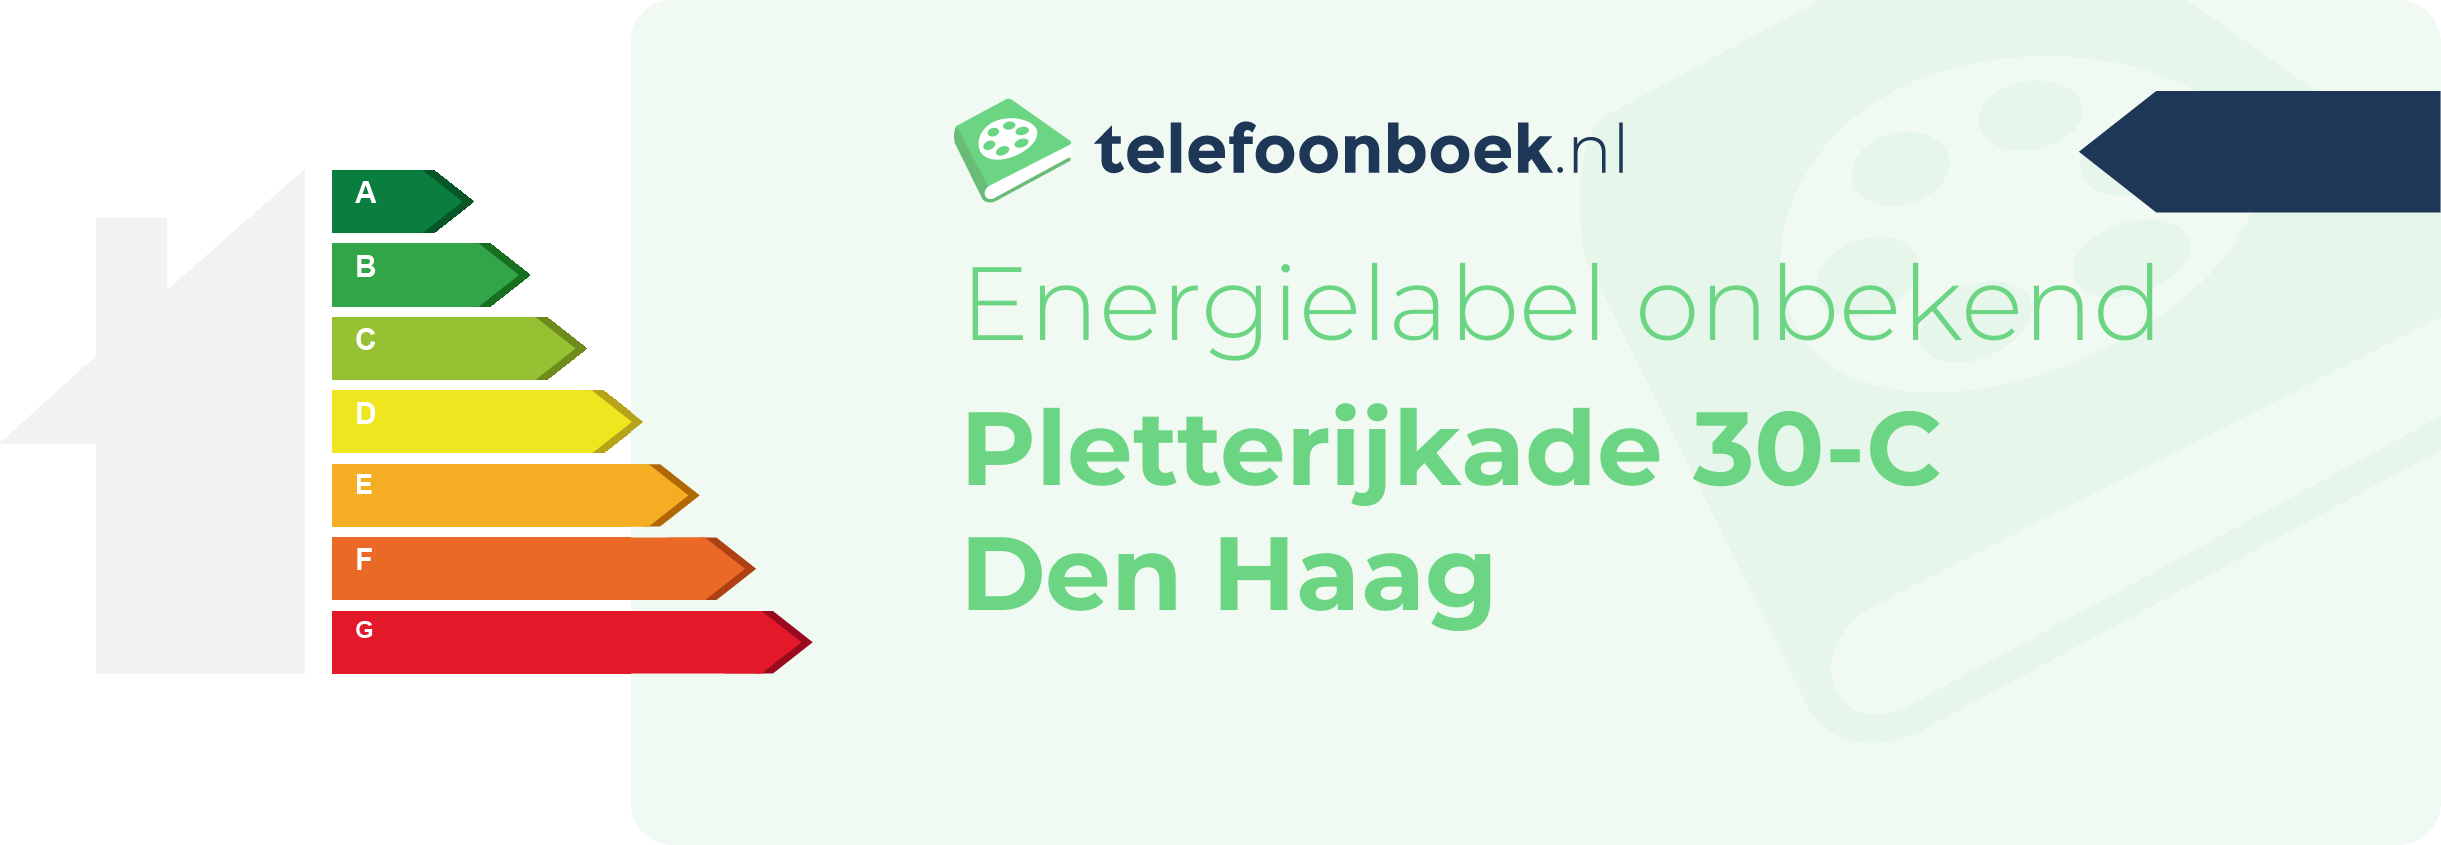 Energielabel Pletterijkade 30-C Den Haag